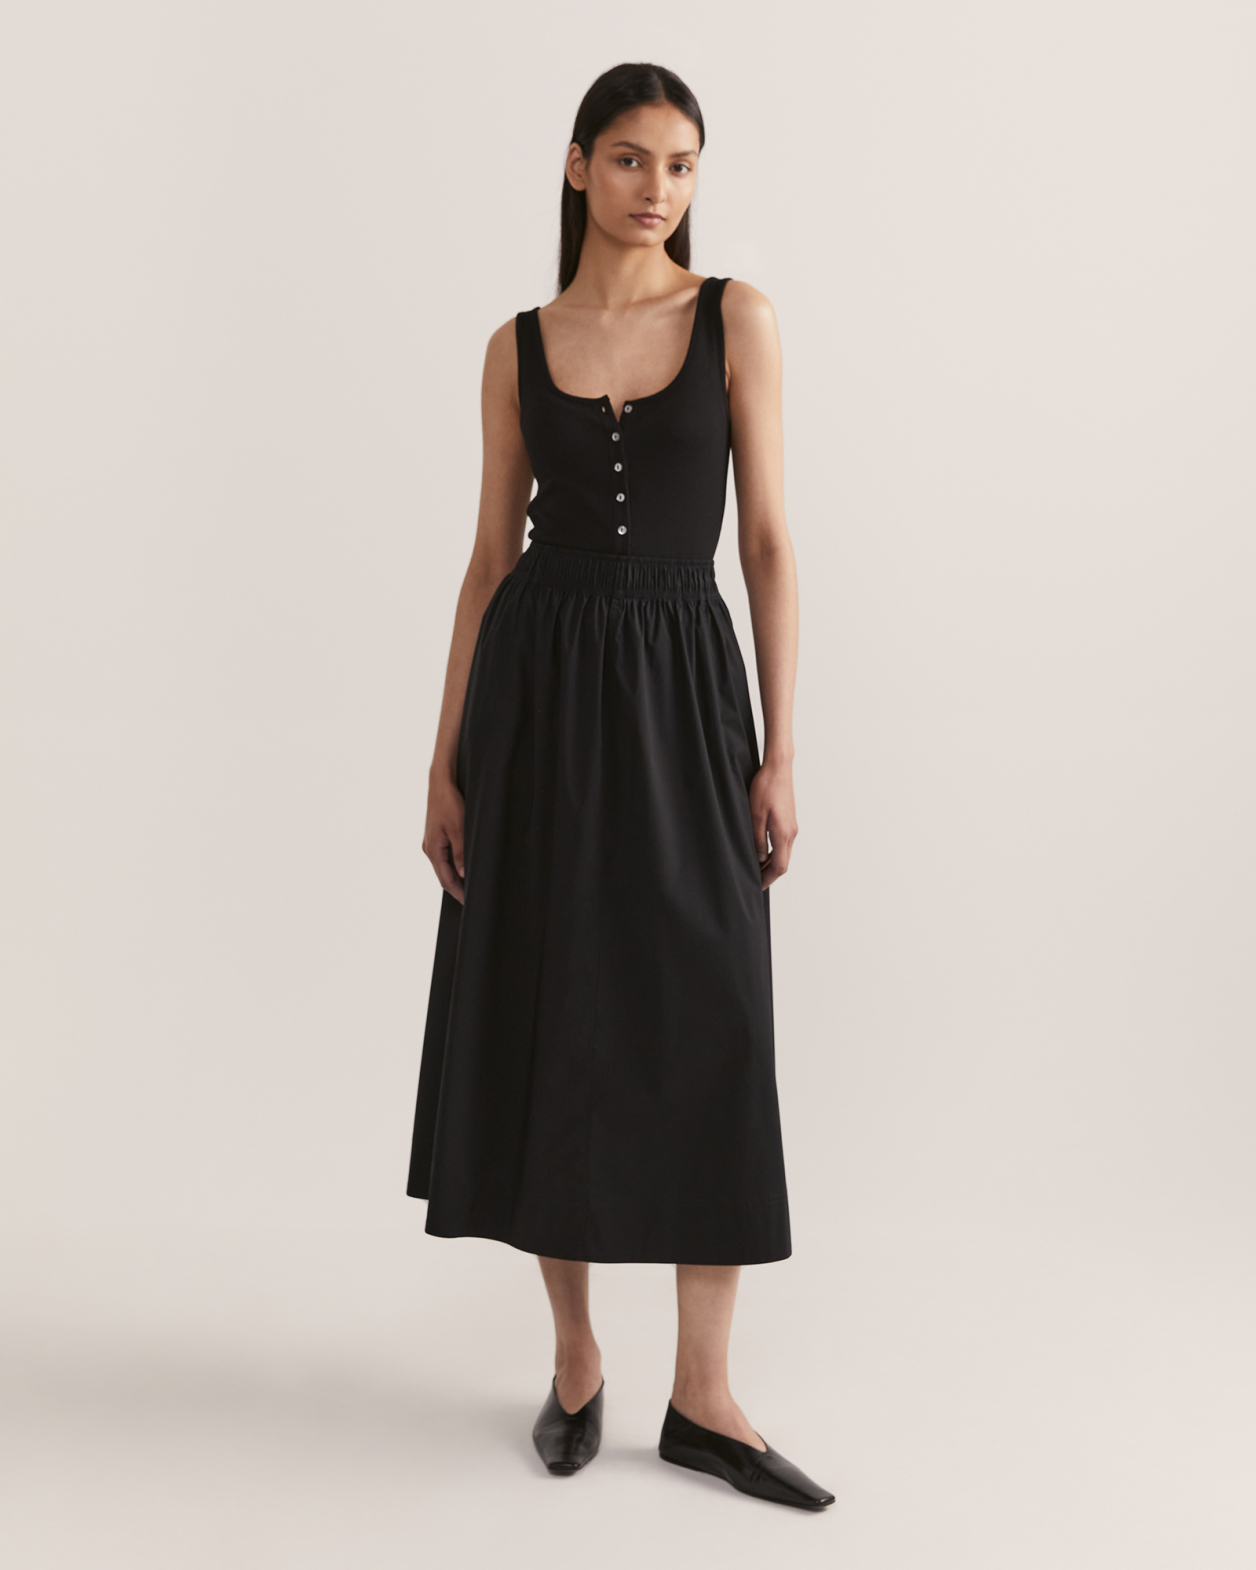 Bianca Midi Skirt in BLACK